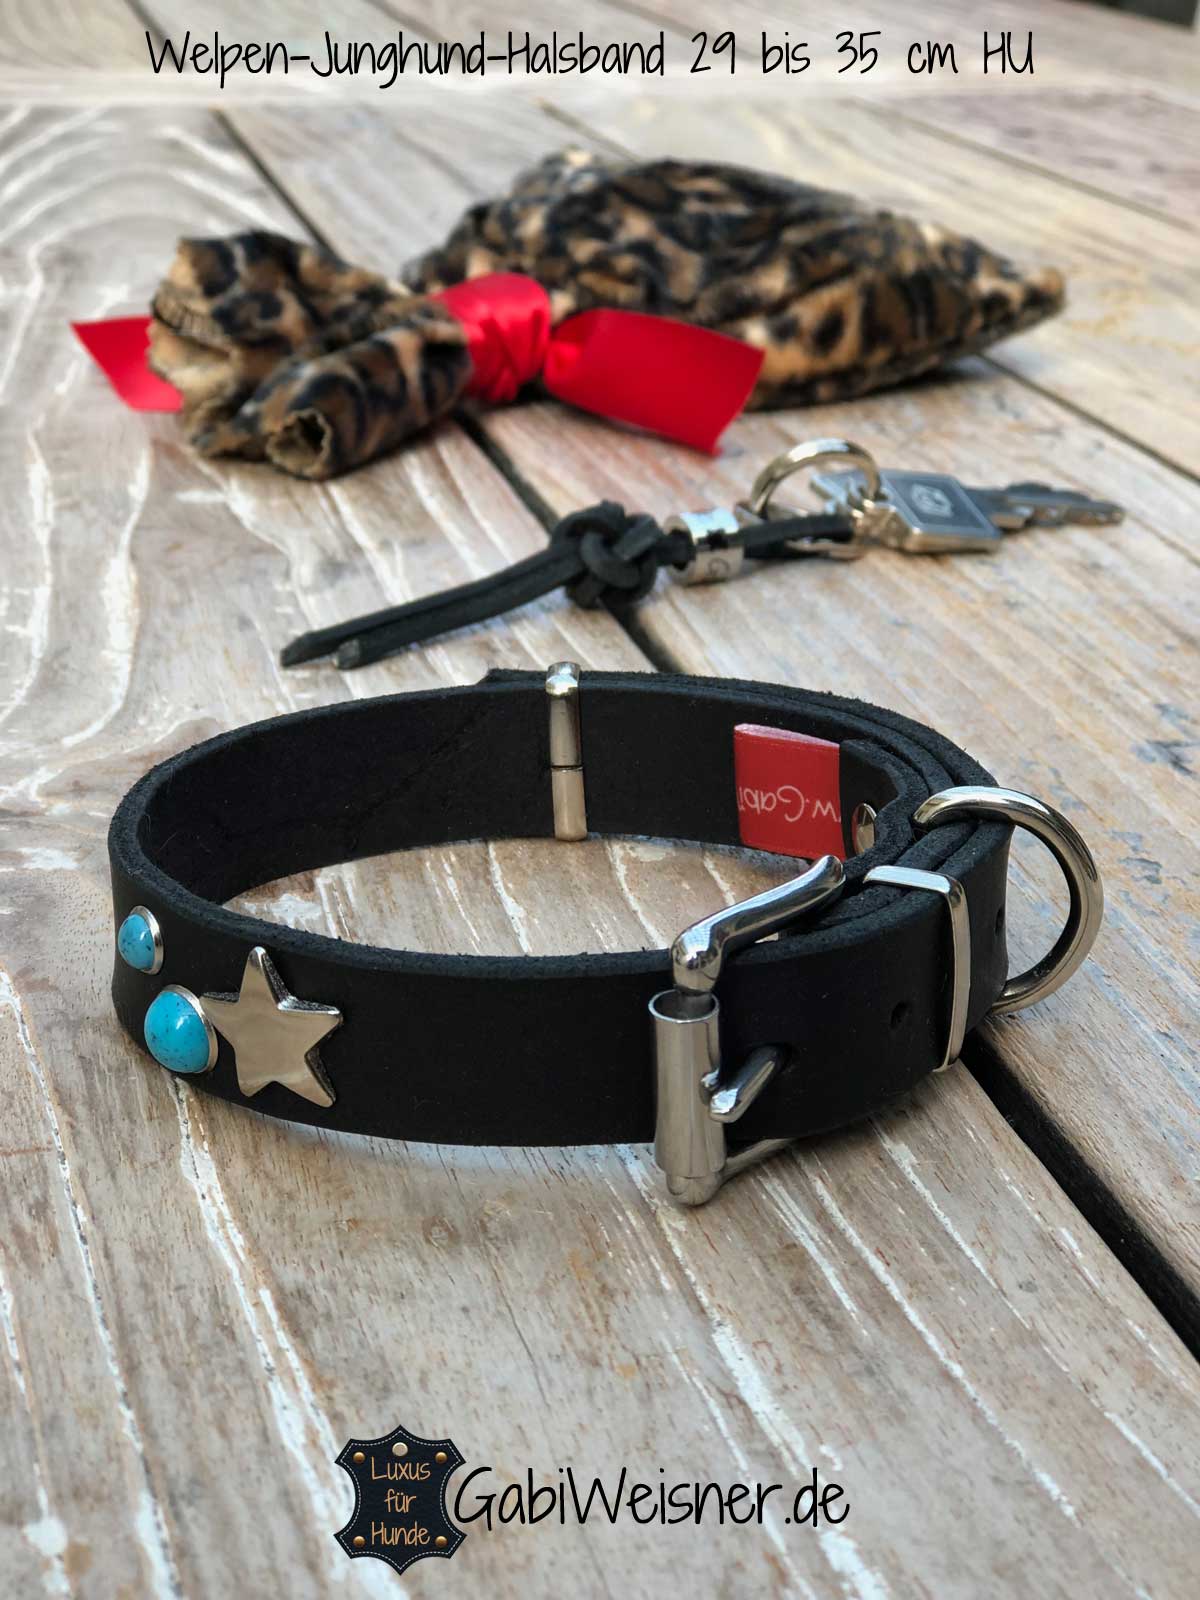 Welpen-Junghund Halsband aus Leder